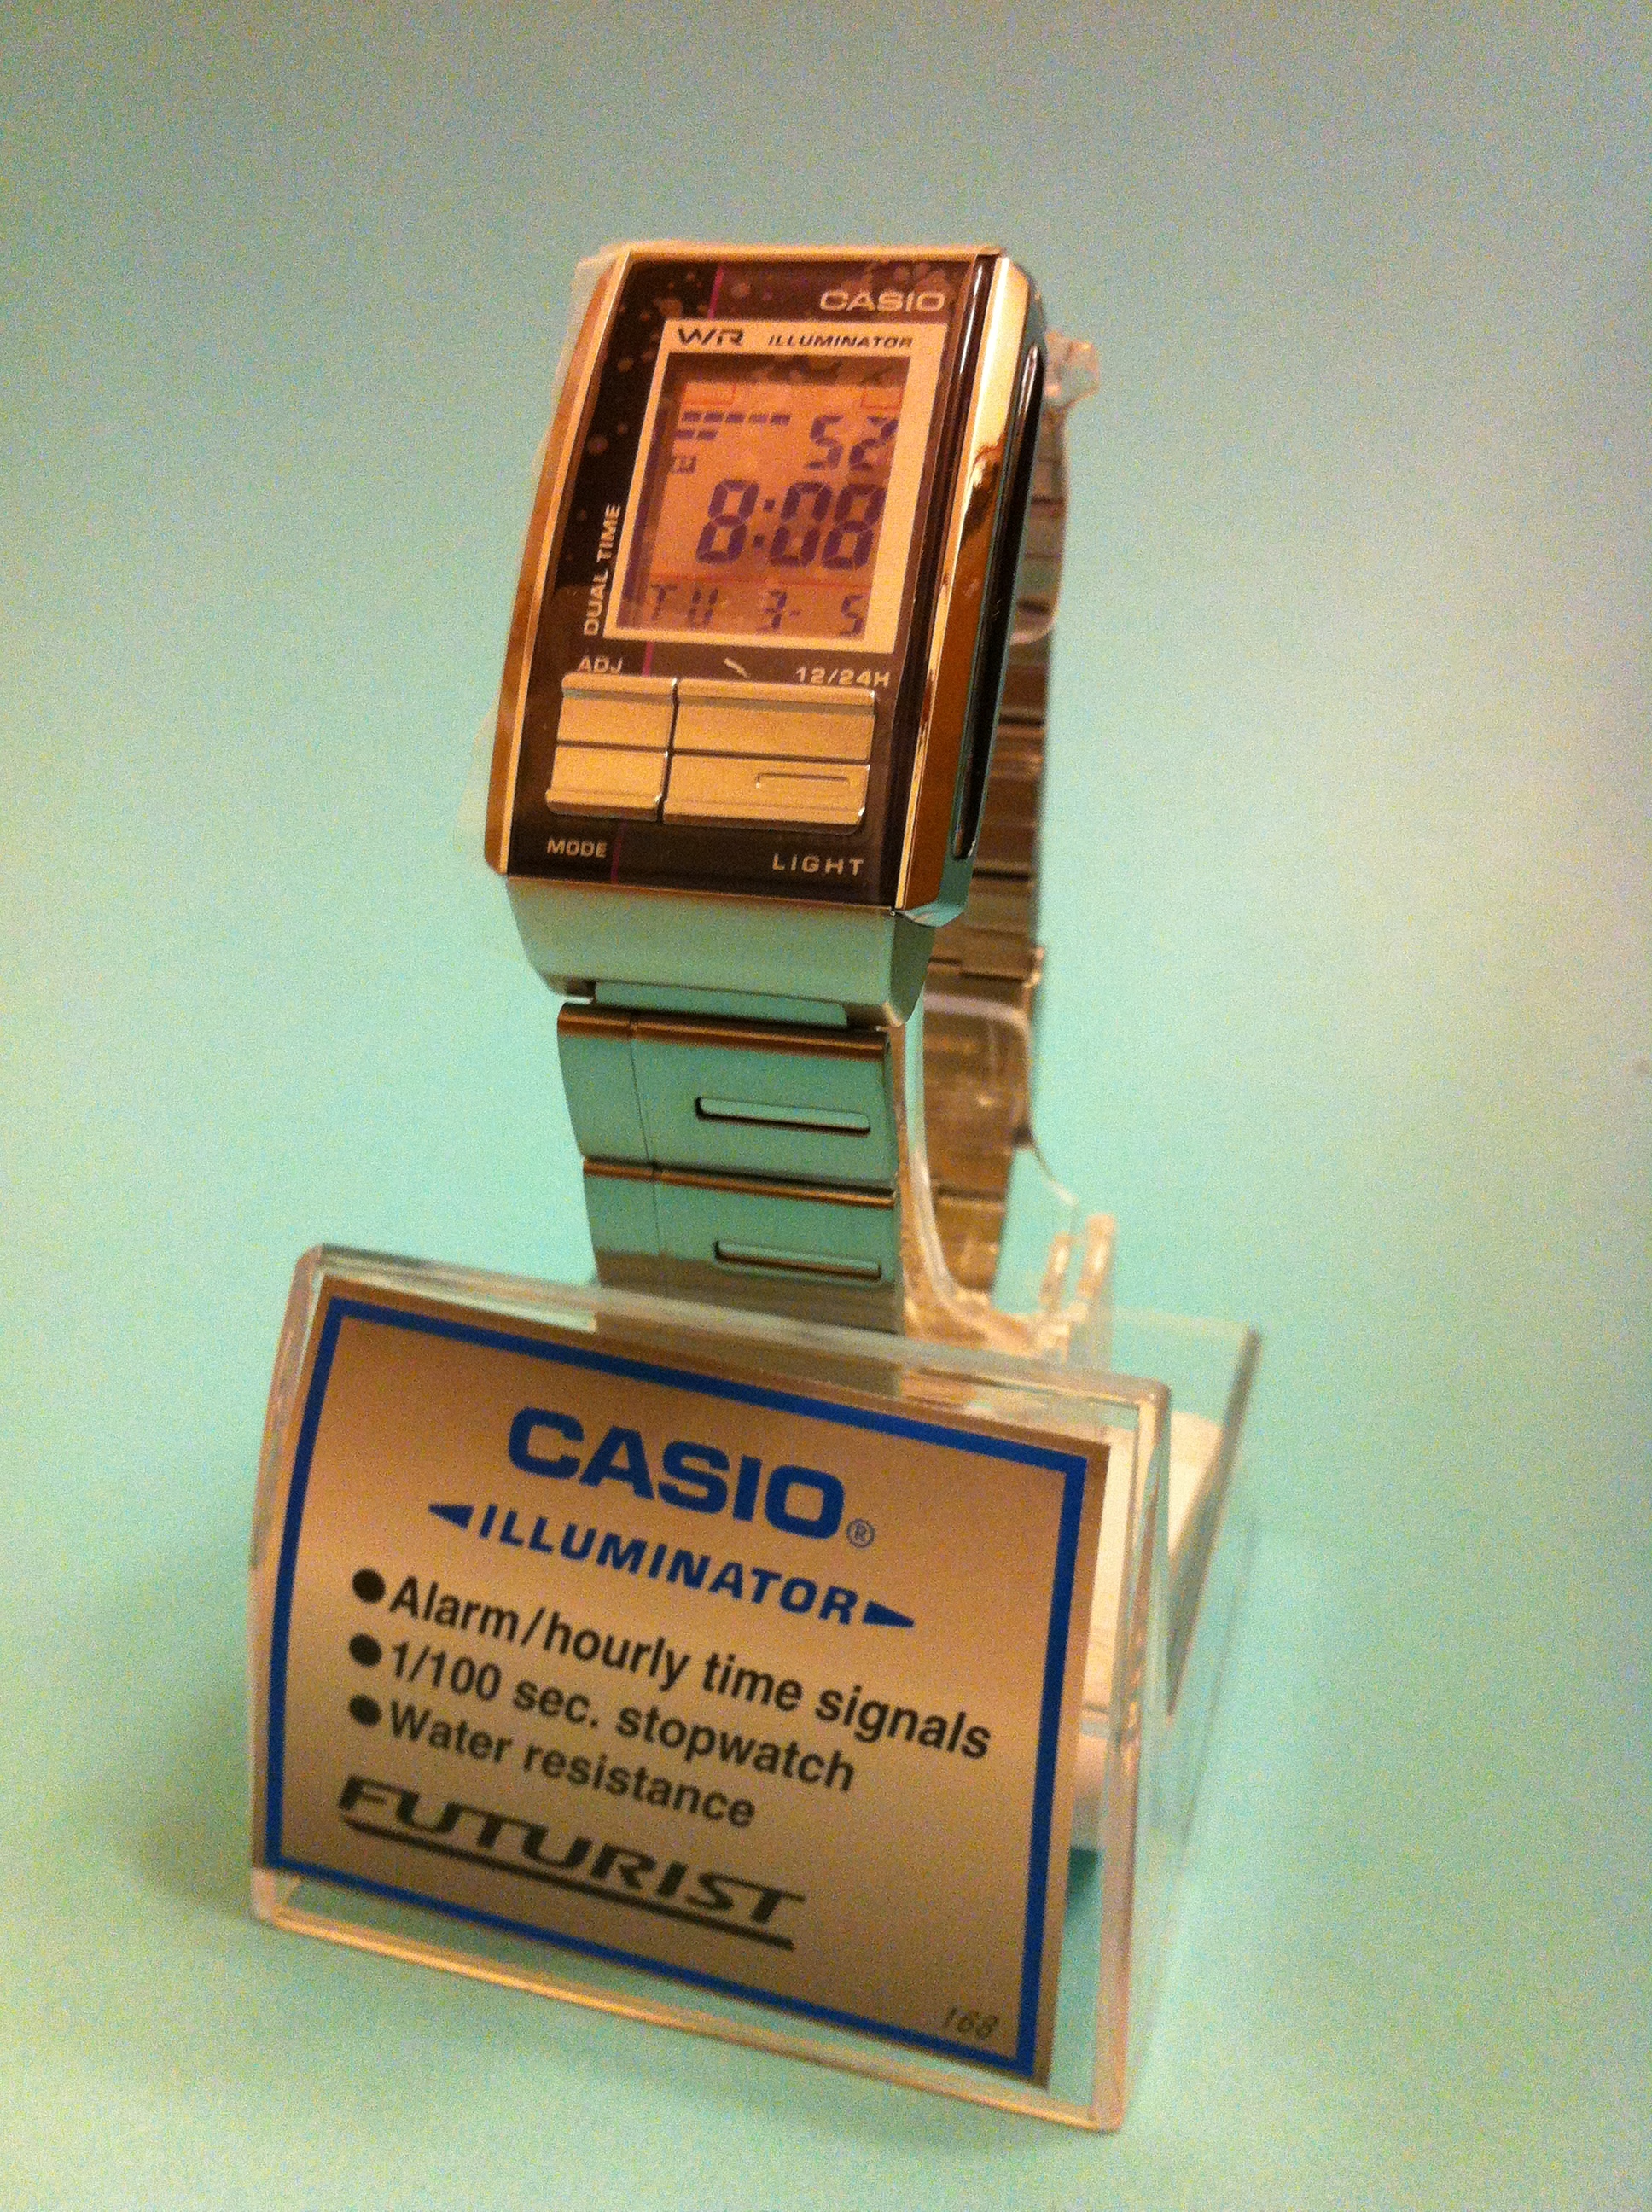 CASIO FUTURIST（カシオ フューチャリスト） LA-201WD-6A: メンズ おしゃれなデジタル腕時計 ビジネスにも！